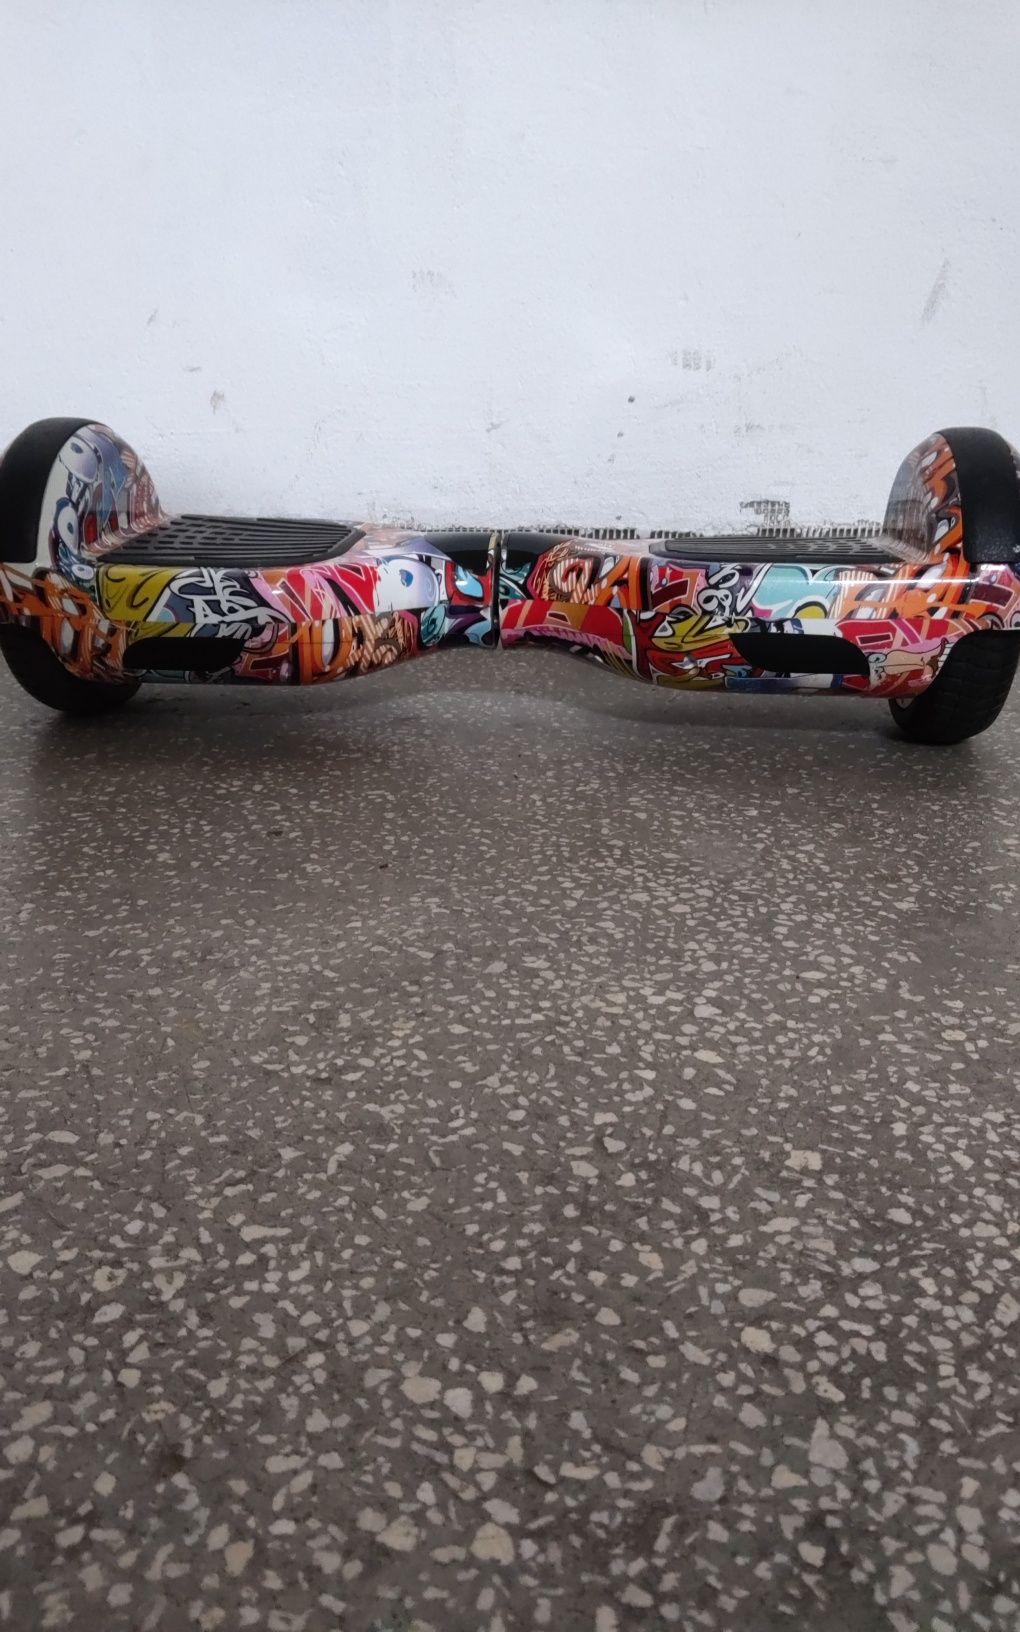 Hoverboard MYRIA Sky Rider MY7037YG, 6.5 inch, graffiti